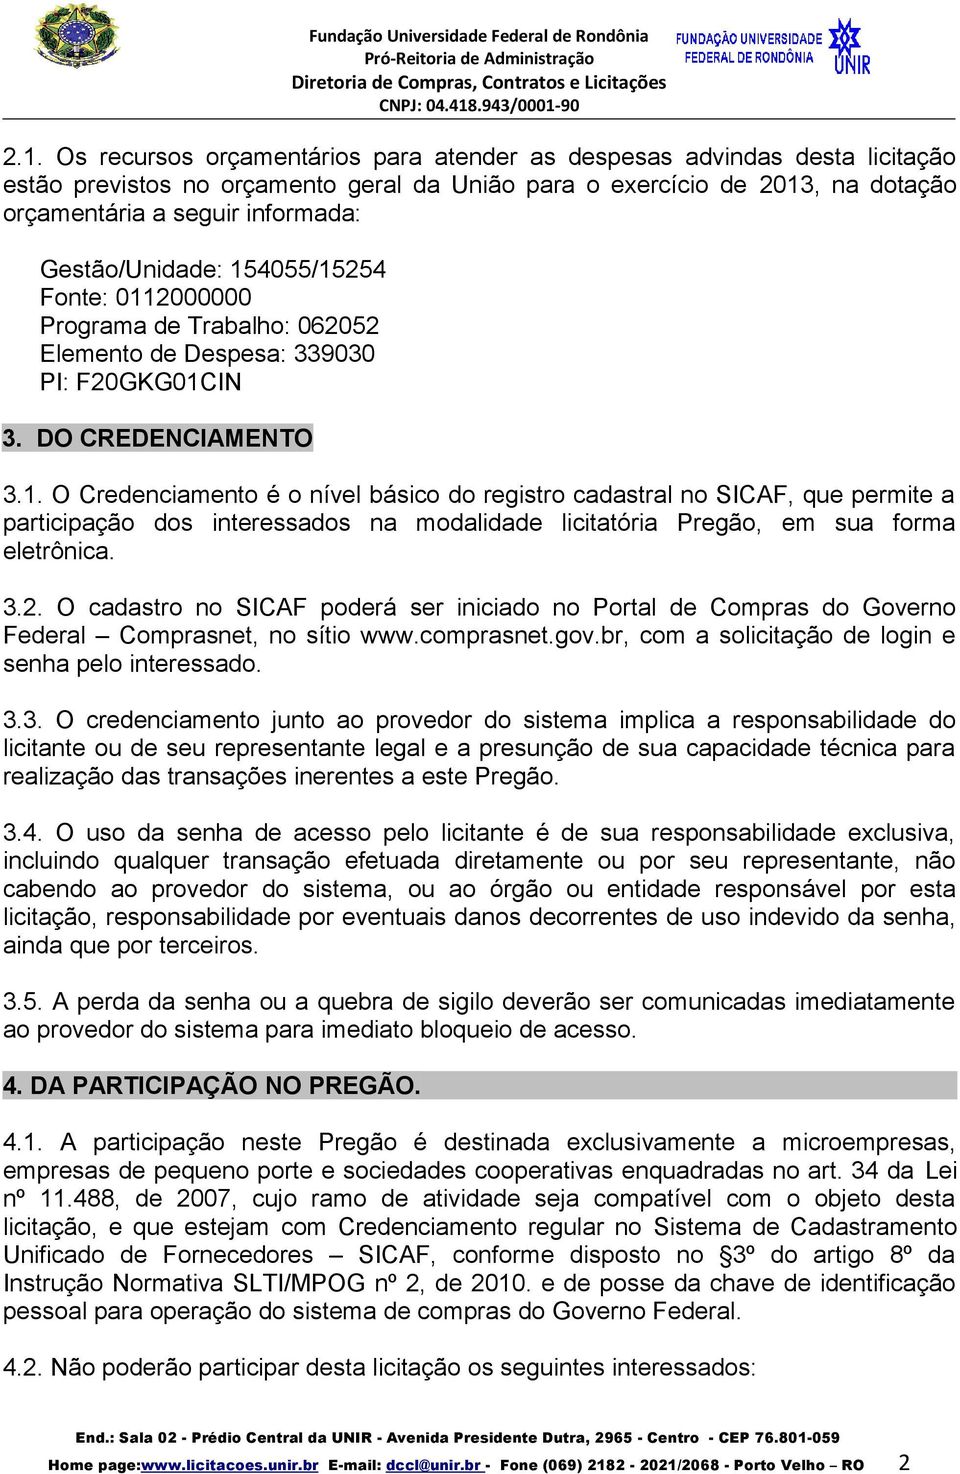 3.2. O cadastro no SICAF poderá ser iniciado no Portal de Compras do Governo Federal Comprasnet, no sítio www.comprasnet.gov.br, com a solicitação de login e senha pelo interessado. 3.3. O